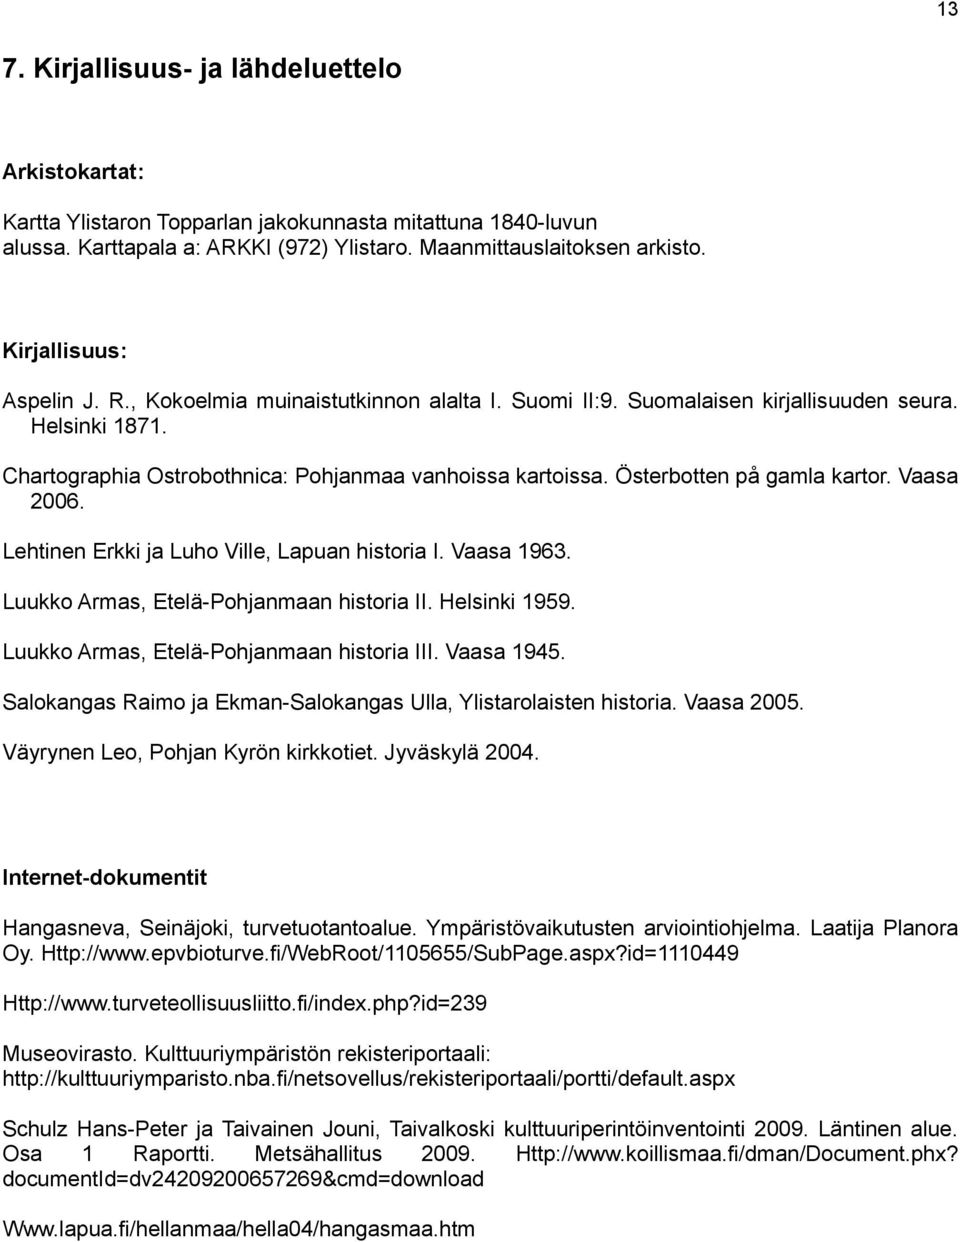 Österbotten på gamla kartor. Vaasa 2006. Lehtinen Erkki ja Luho Ville, Lapuan historia I. Vaasa 1963. Luukko Armas, Etelä-Pohjanmaan historia II. Helsinki 1959.